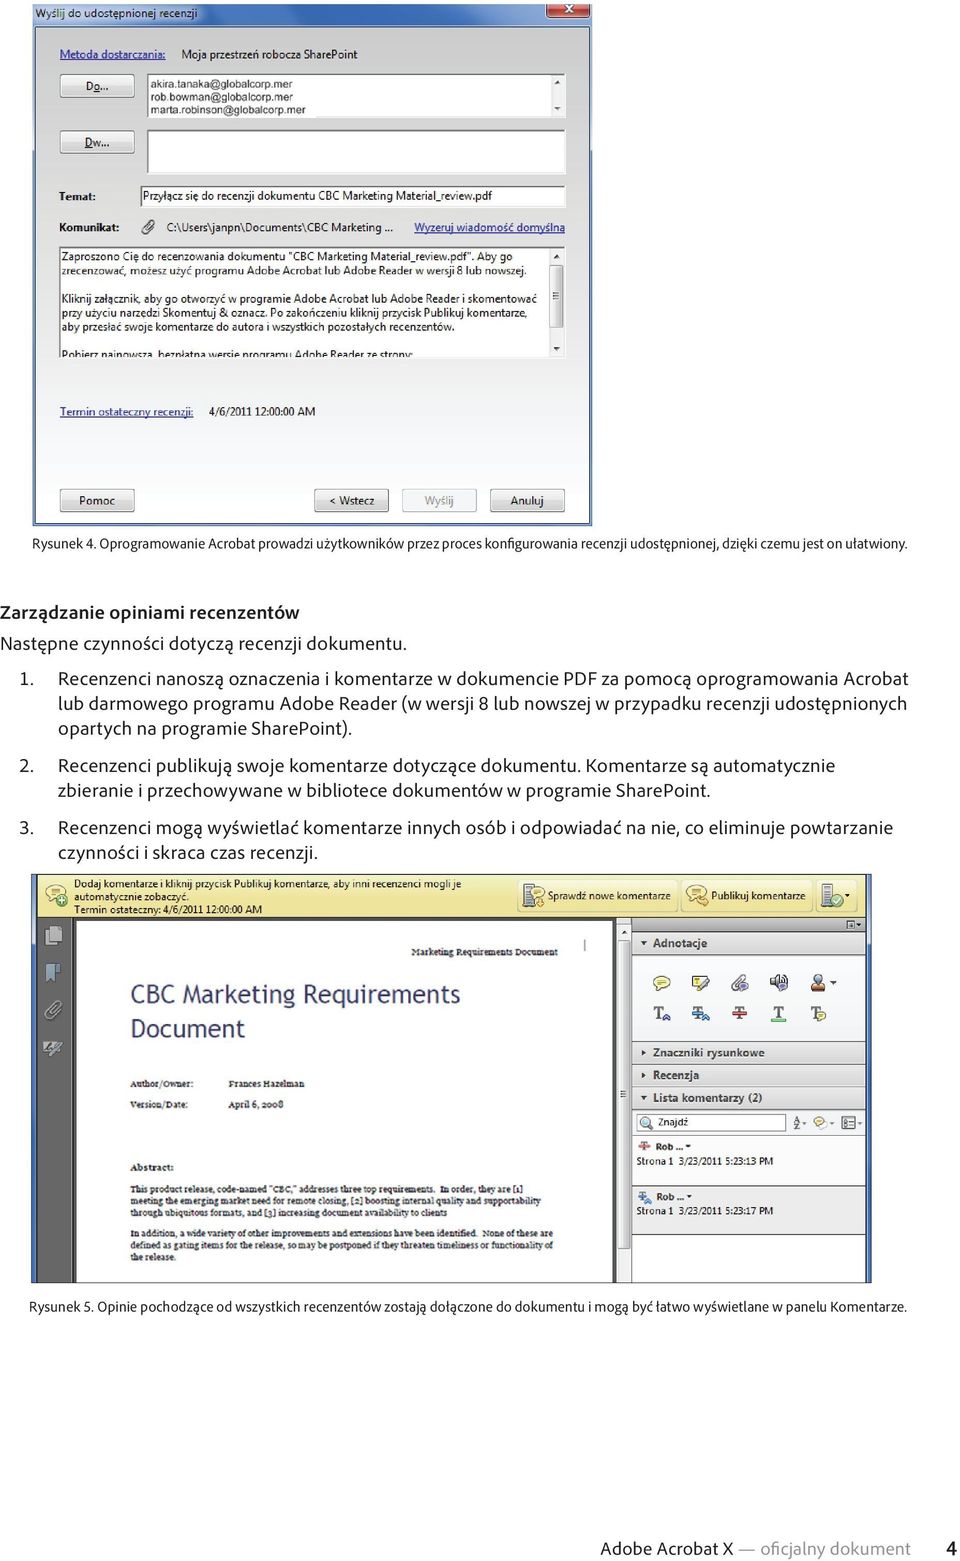 Recenzenci nanoszą oznaczenia i komentarze w dokumencie PDF za pomocą oprogramowania Acrobat lub darmowego programu Adobe Reader (w wersji 8 lub nowszej w przypadku recenzji udostępnionych opartych